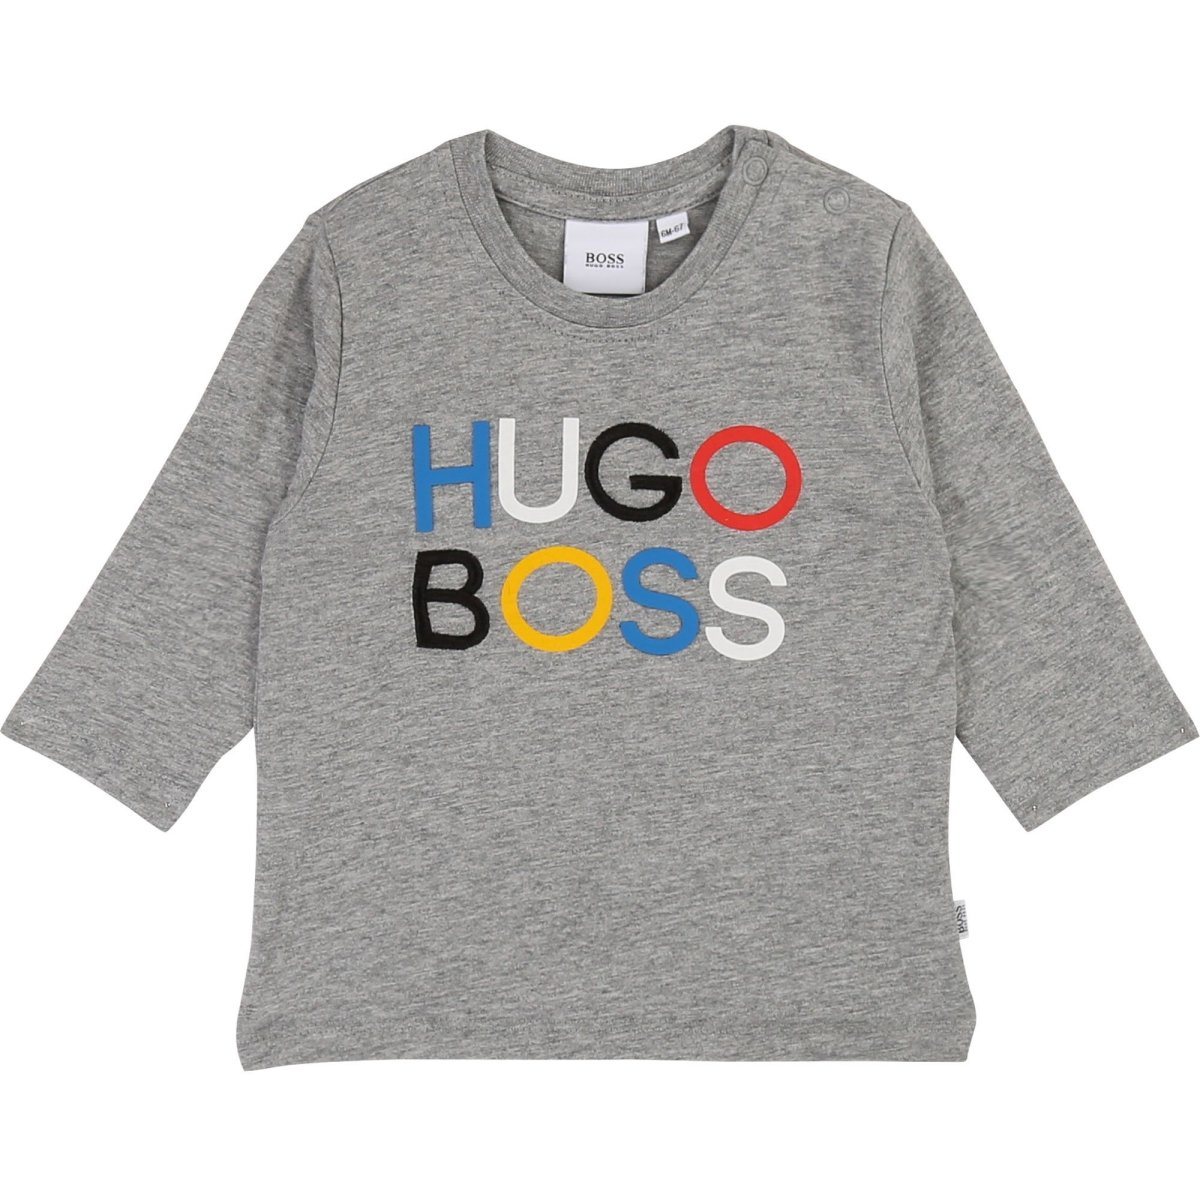 Hugo Boss Toddler Long Sleeve T-Shirt 